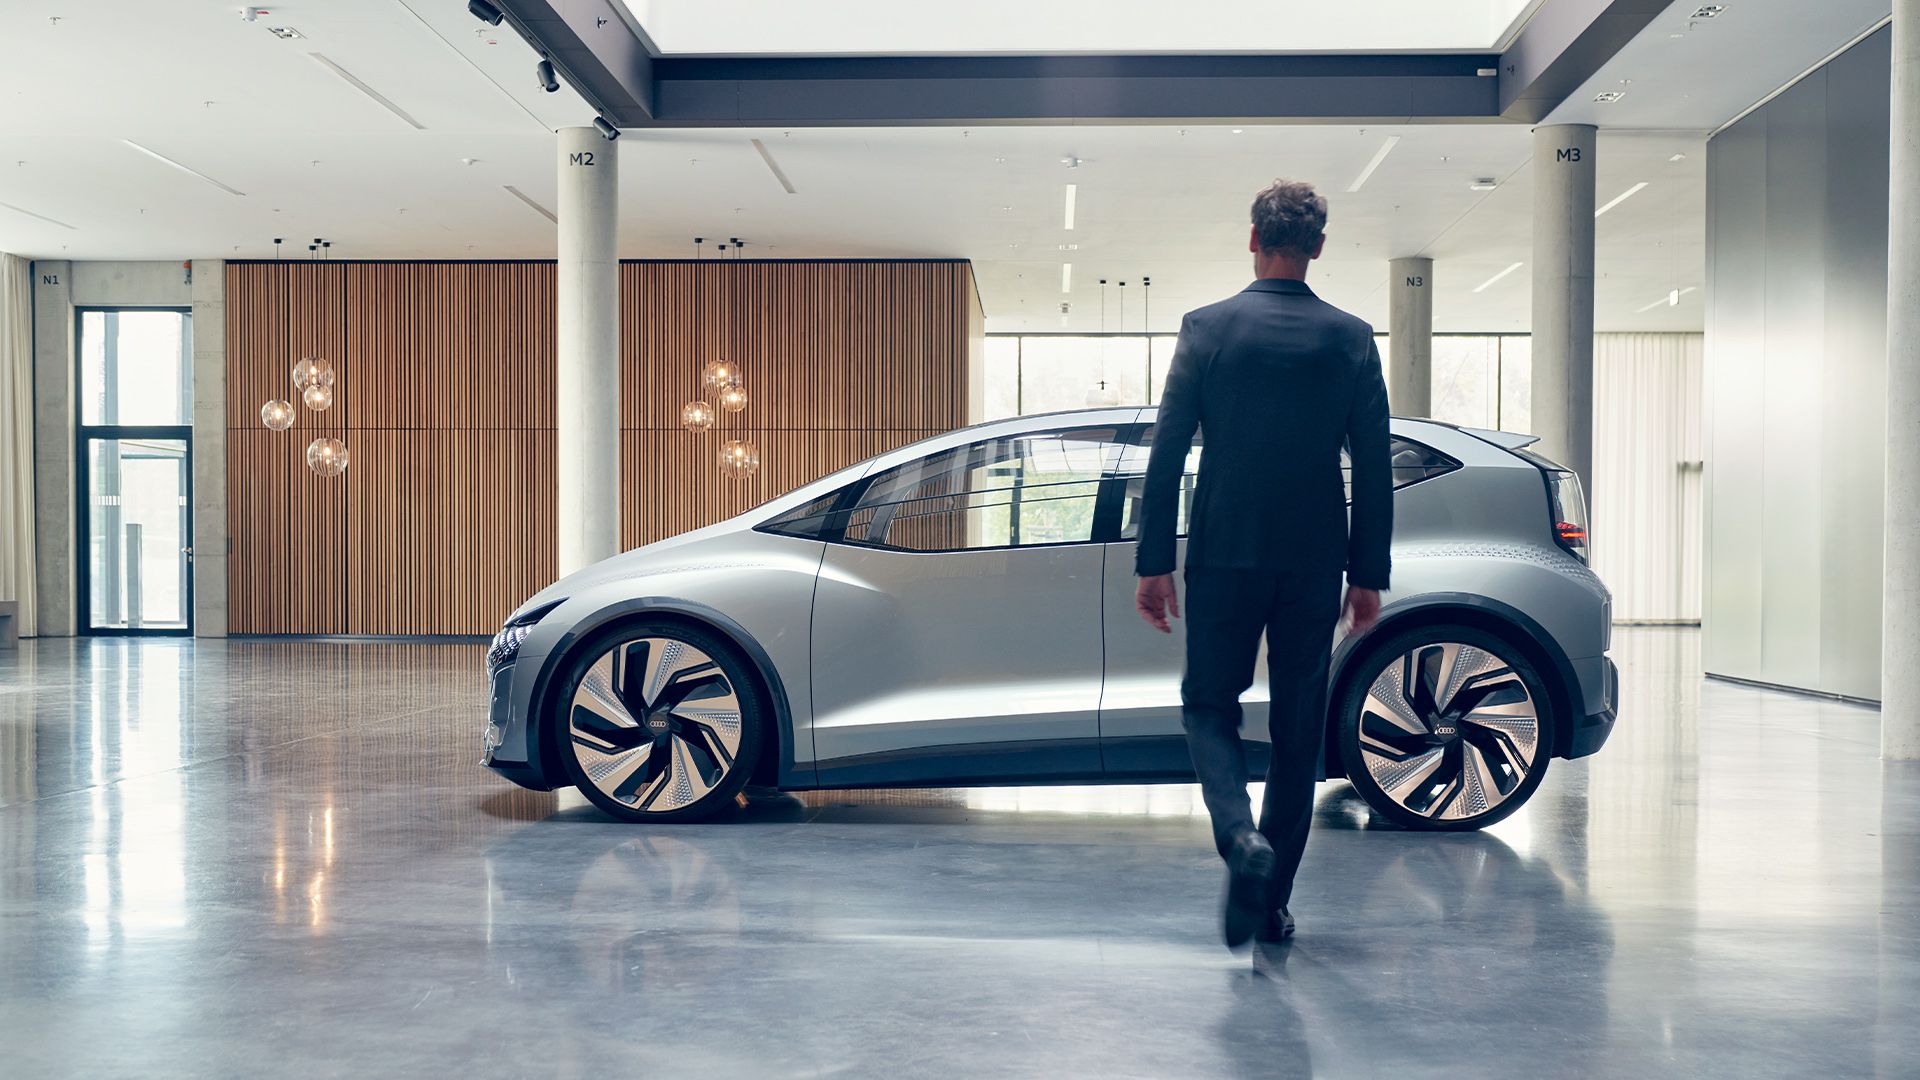 Audi AI:ME¹ ilk kez Şangay Auto 2019’da tanıtıldı. Geleceğin mega şehirleri için geliştirilen vizyoner mobilite konseptinin kompakt boyutlar, çığır açan iç tasarım ve 4. seviye son teknoloji otonom sürüş. Burada gösterilen araç ürün modeli olarak hazır olmayan konsept bir arabadır.